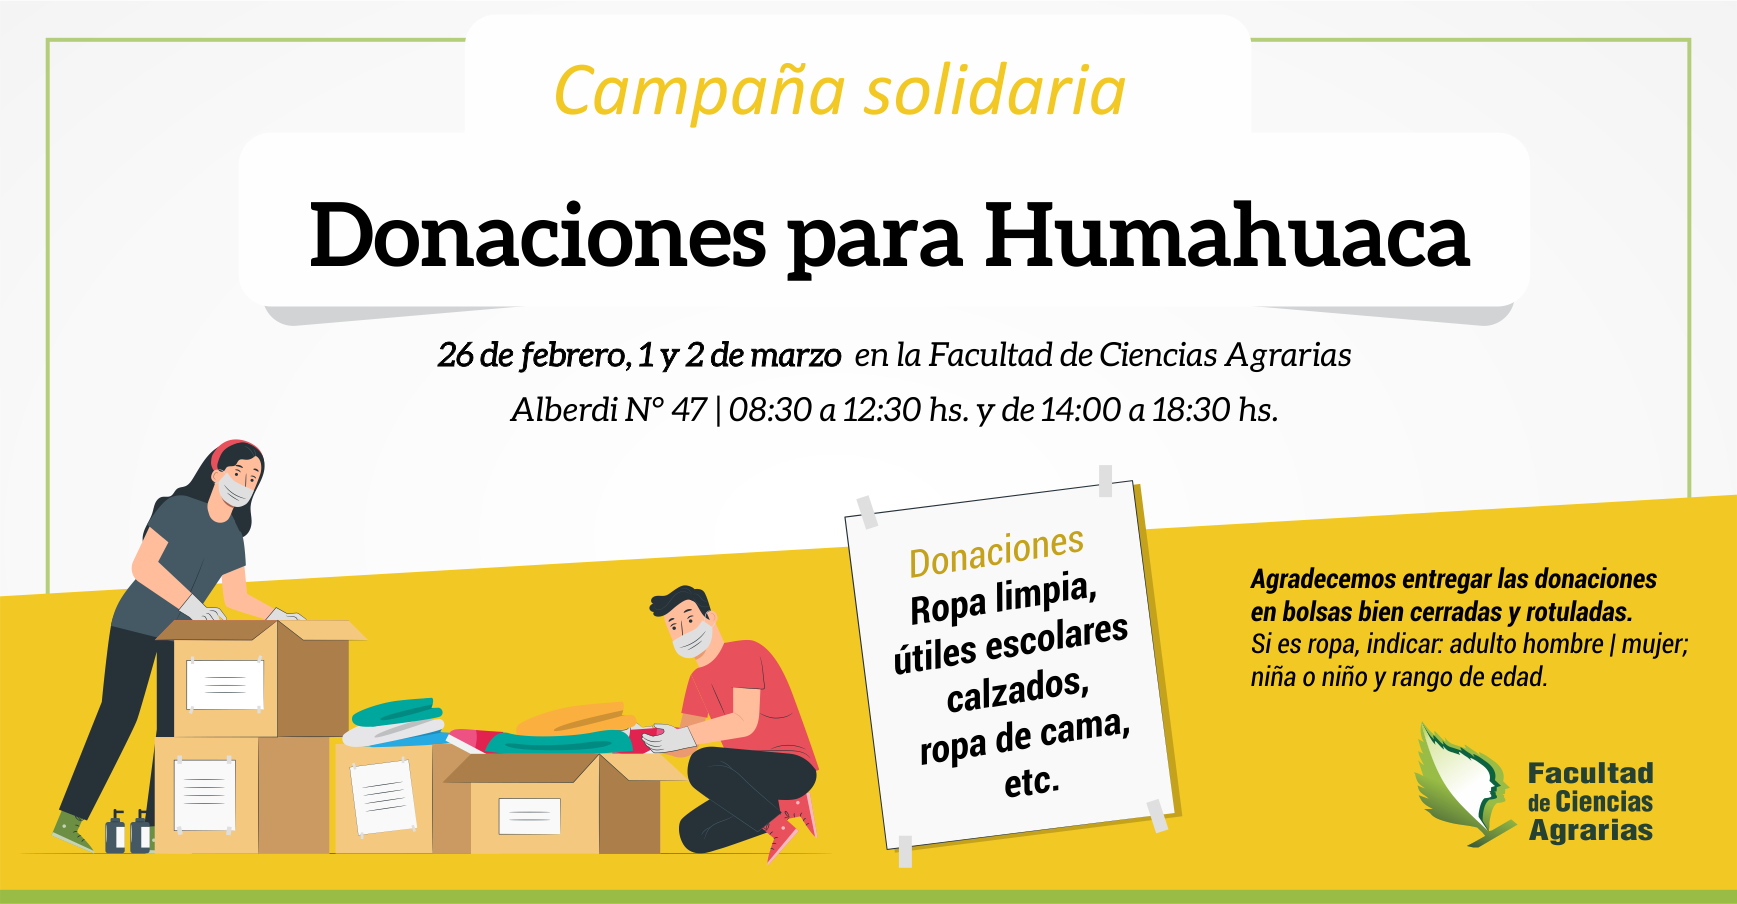 Campaña solidaria “Donaciones para Humahuaca"